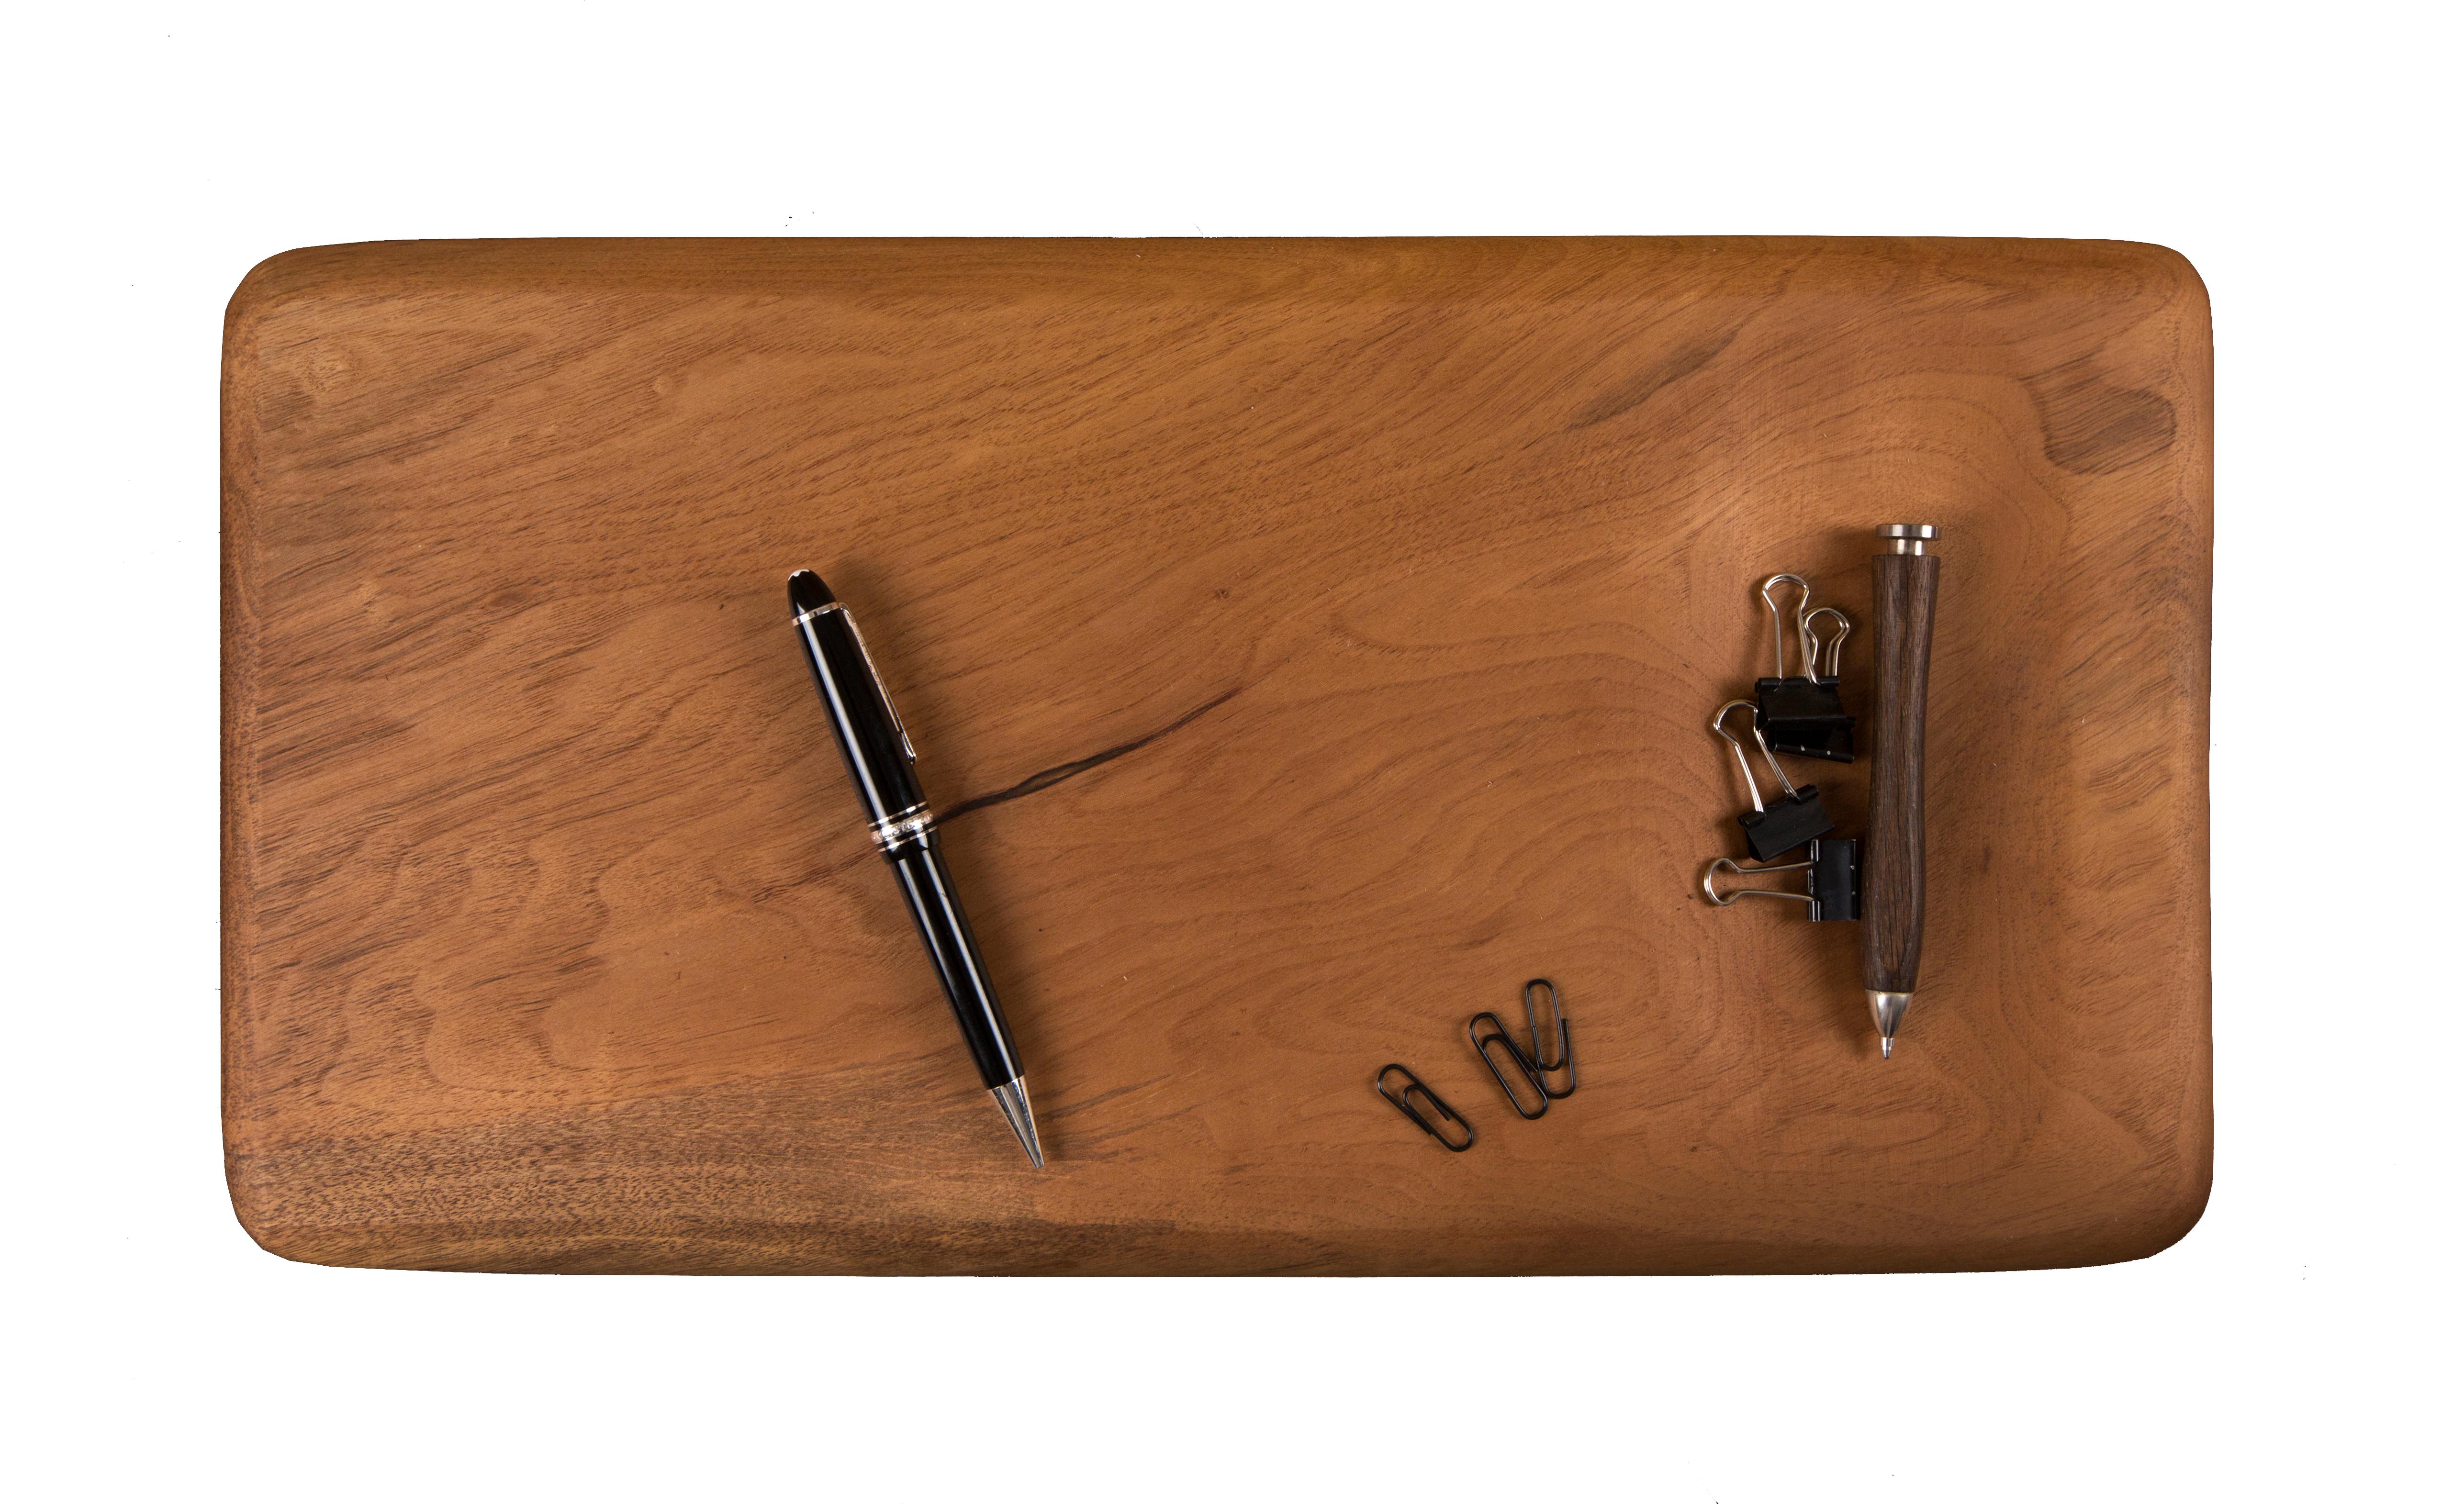 Accessoires de bureau Bymyside par Rectangle Studio
Dimensions : L 25 x D 2 x H 48 cm 
MATERIAL : Noyer massif et huile de bois naturelle

Bymyside Desk est un accessoire de design complémentaire façonné manuellement, qui fonctionne selon les